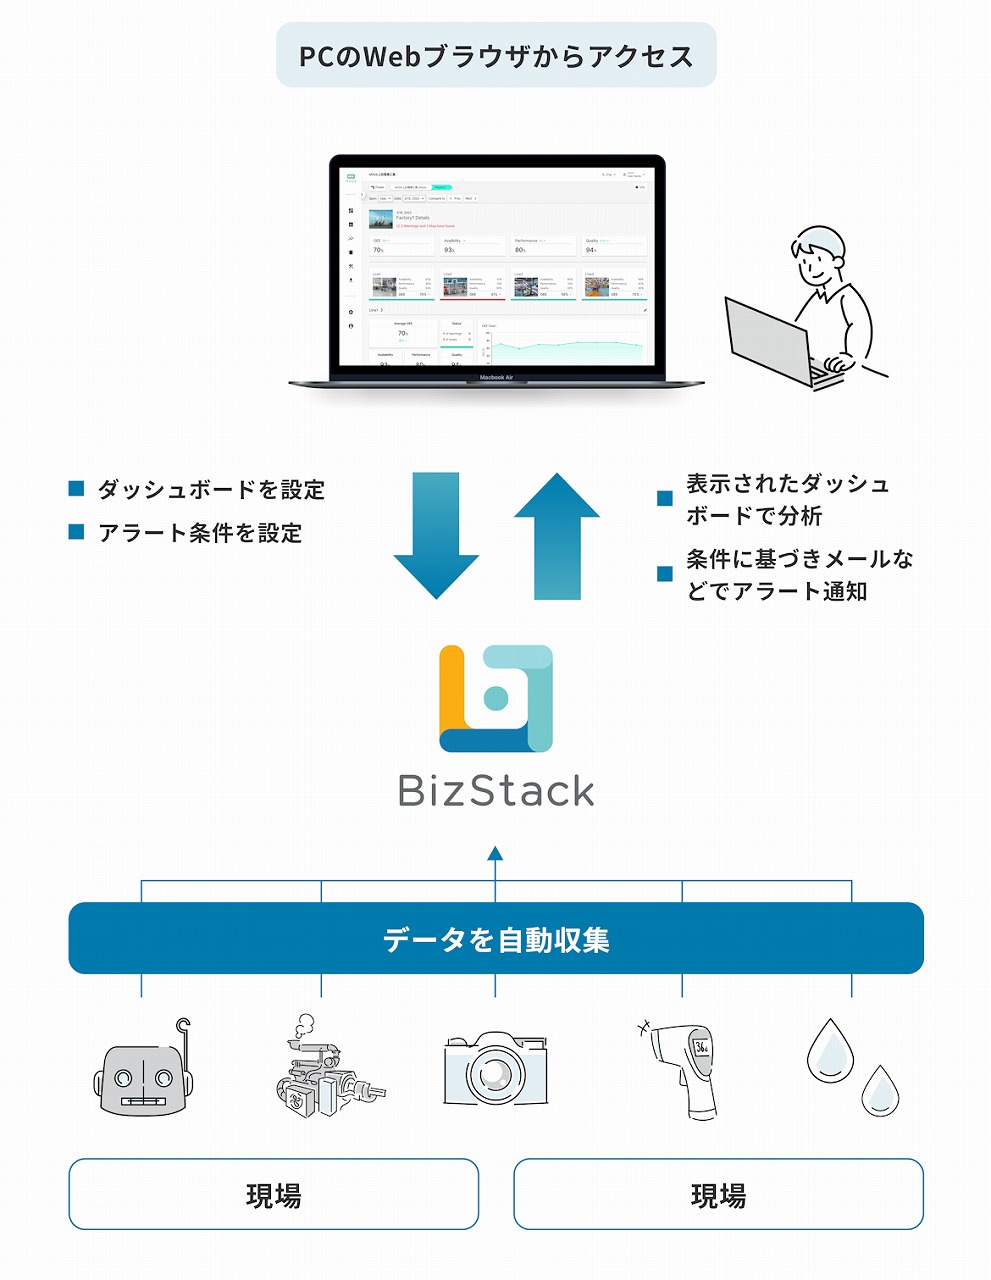 現場の様々なセンサーからデータを自動収集し、一元管理する「BizStack」のイメージ図（以下の資料：MODE）